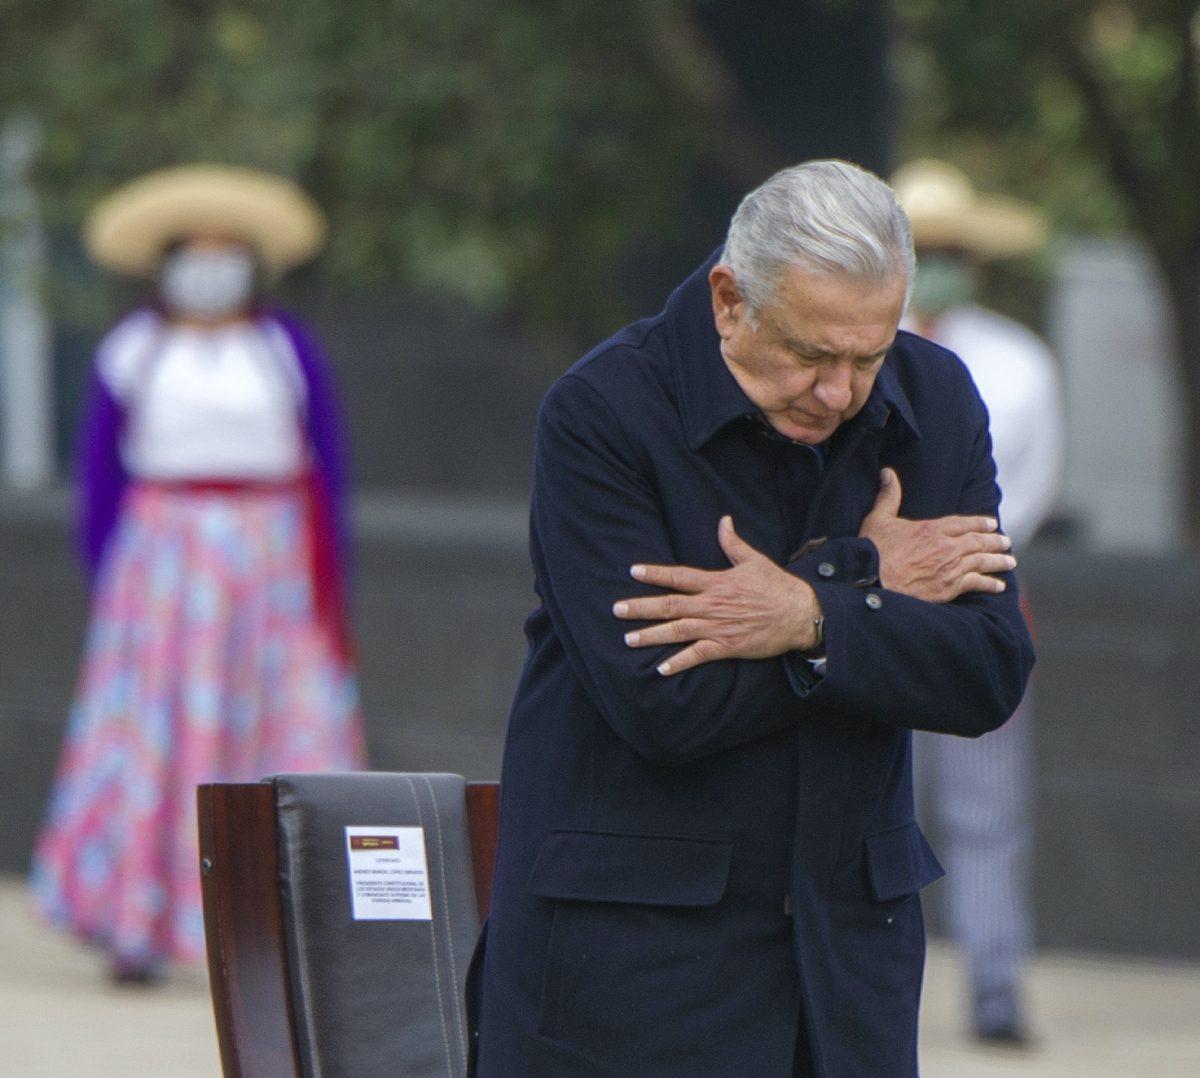 Cumbre de las Américas: López Obrador rechaza asistencia tras exclusión de Cuba, Nicaragua y Venezuela